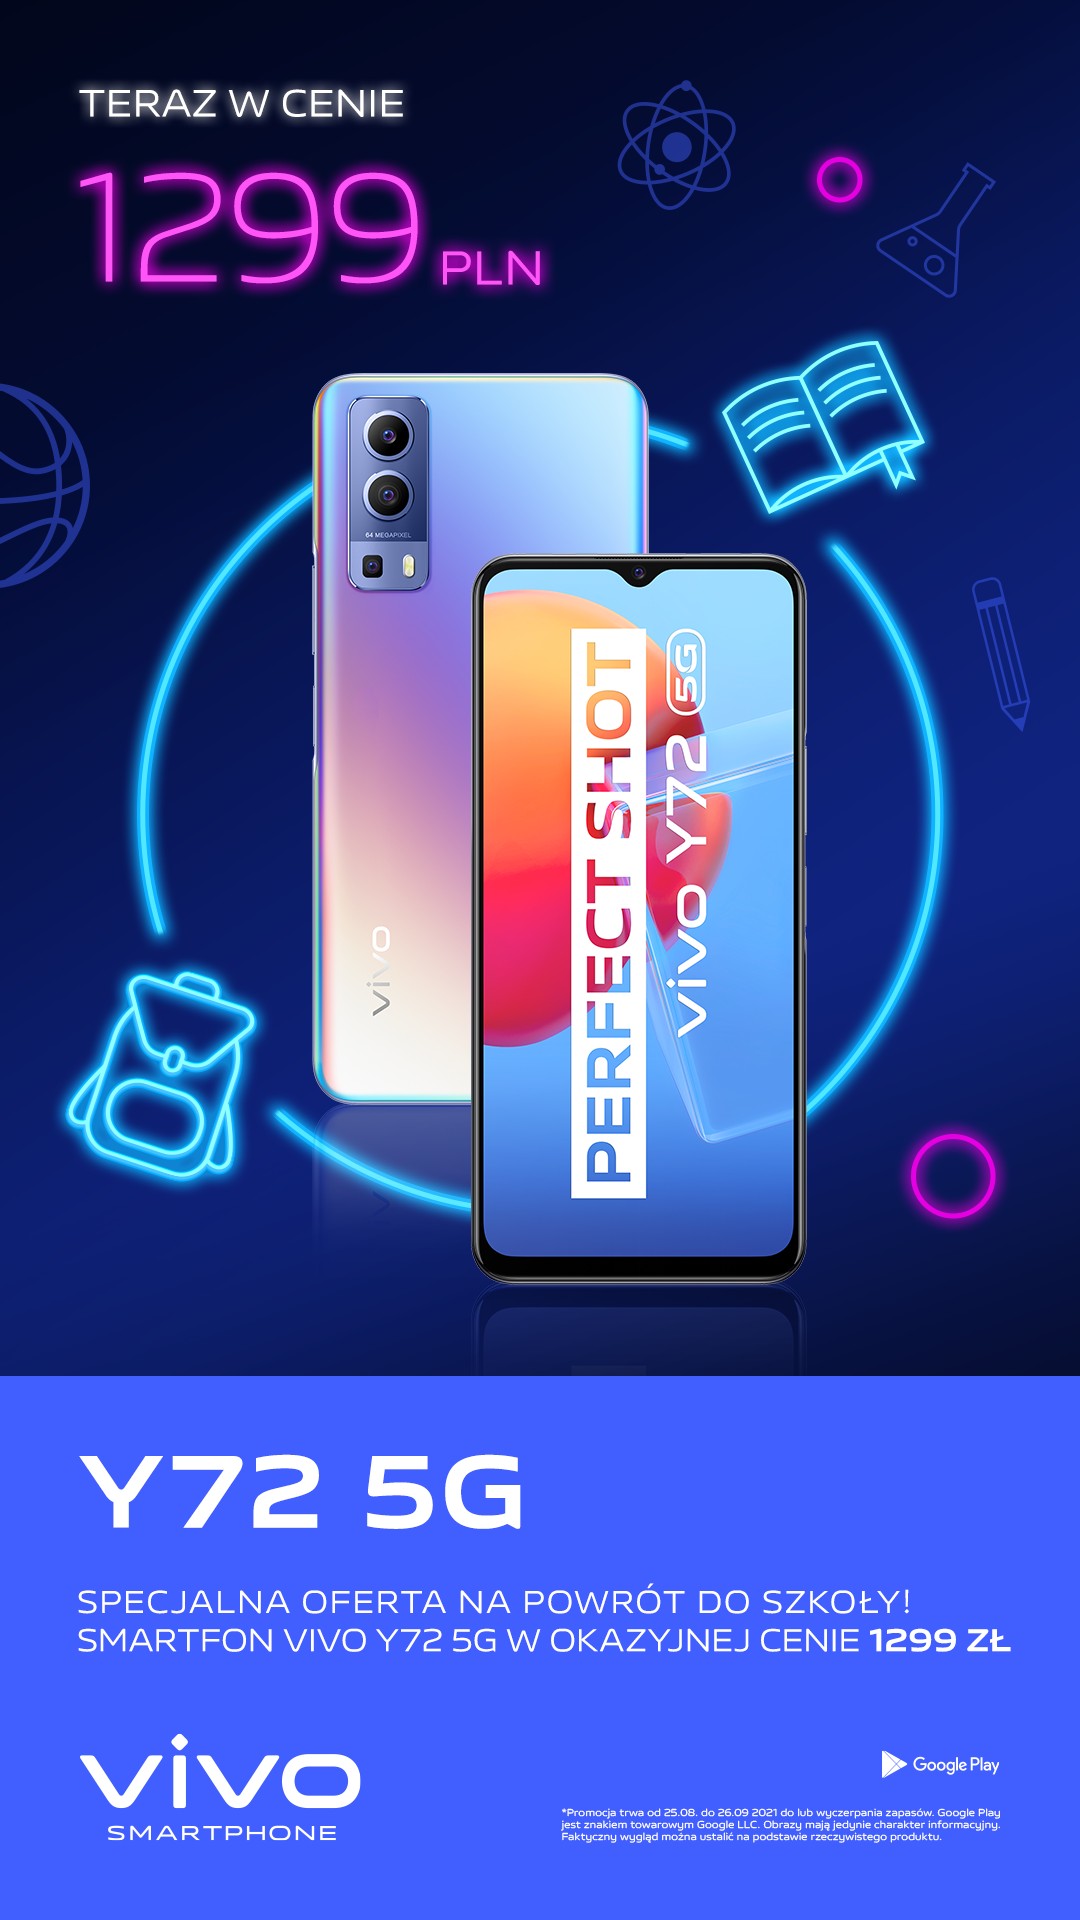 Y72 5G promo